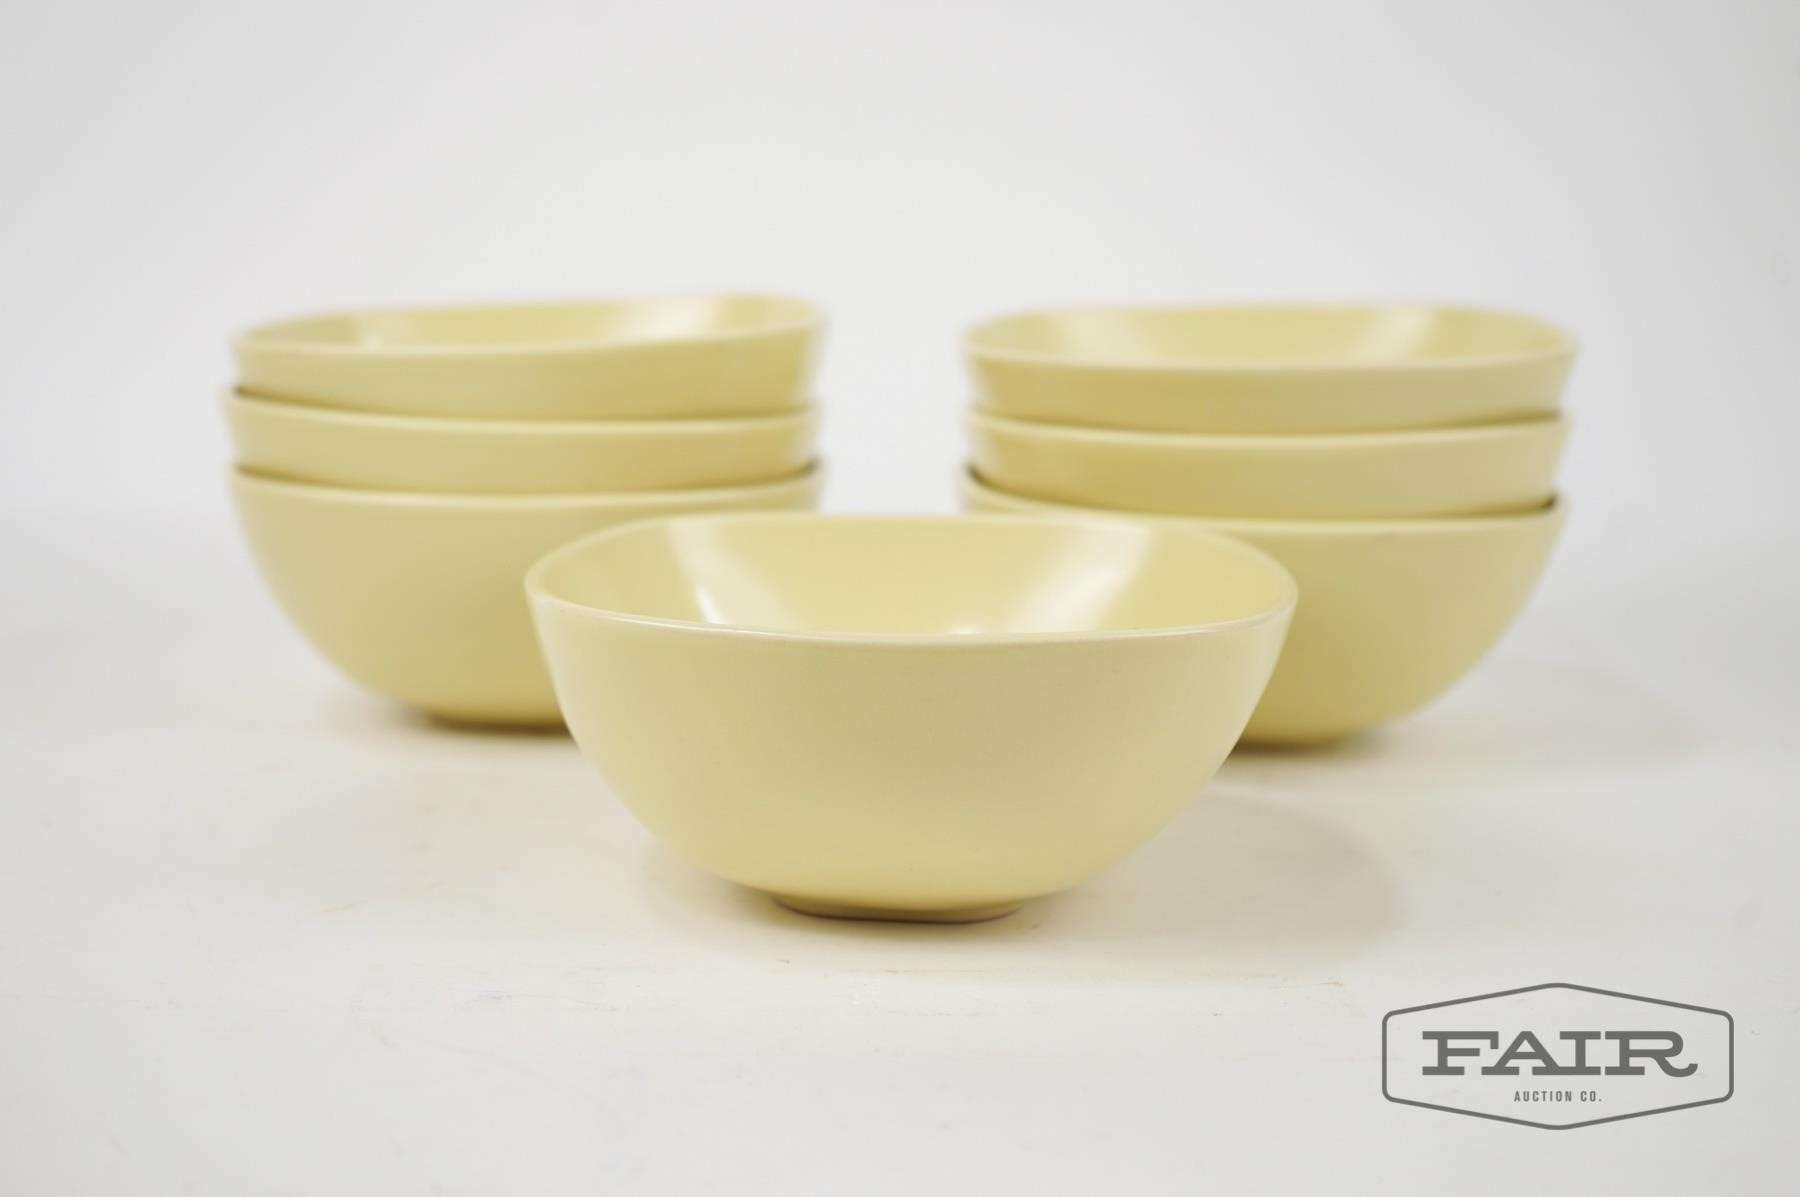 Vintage Hoganas Keramik yellow bowl Made in Sweden